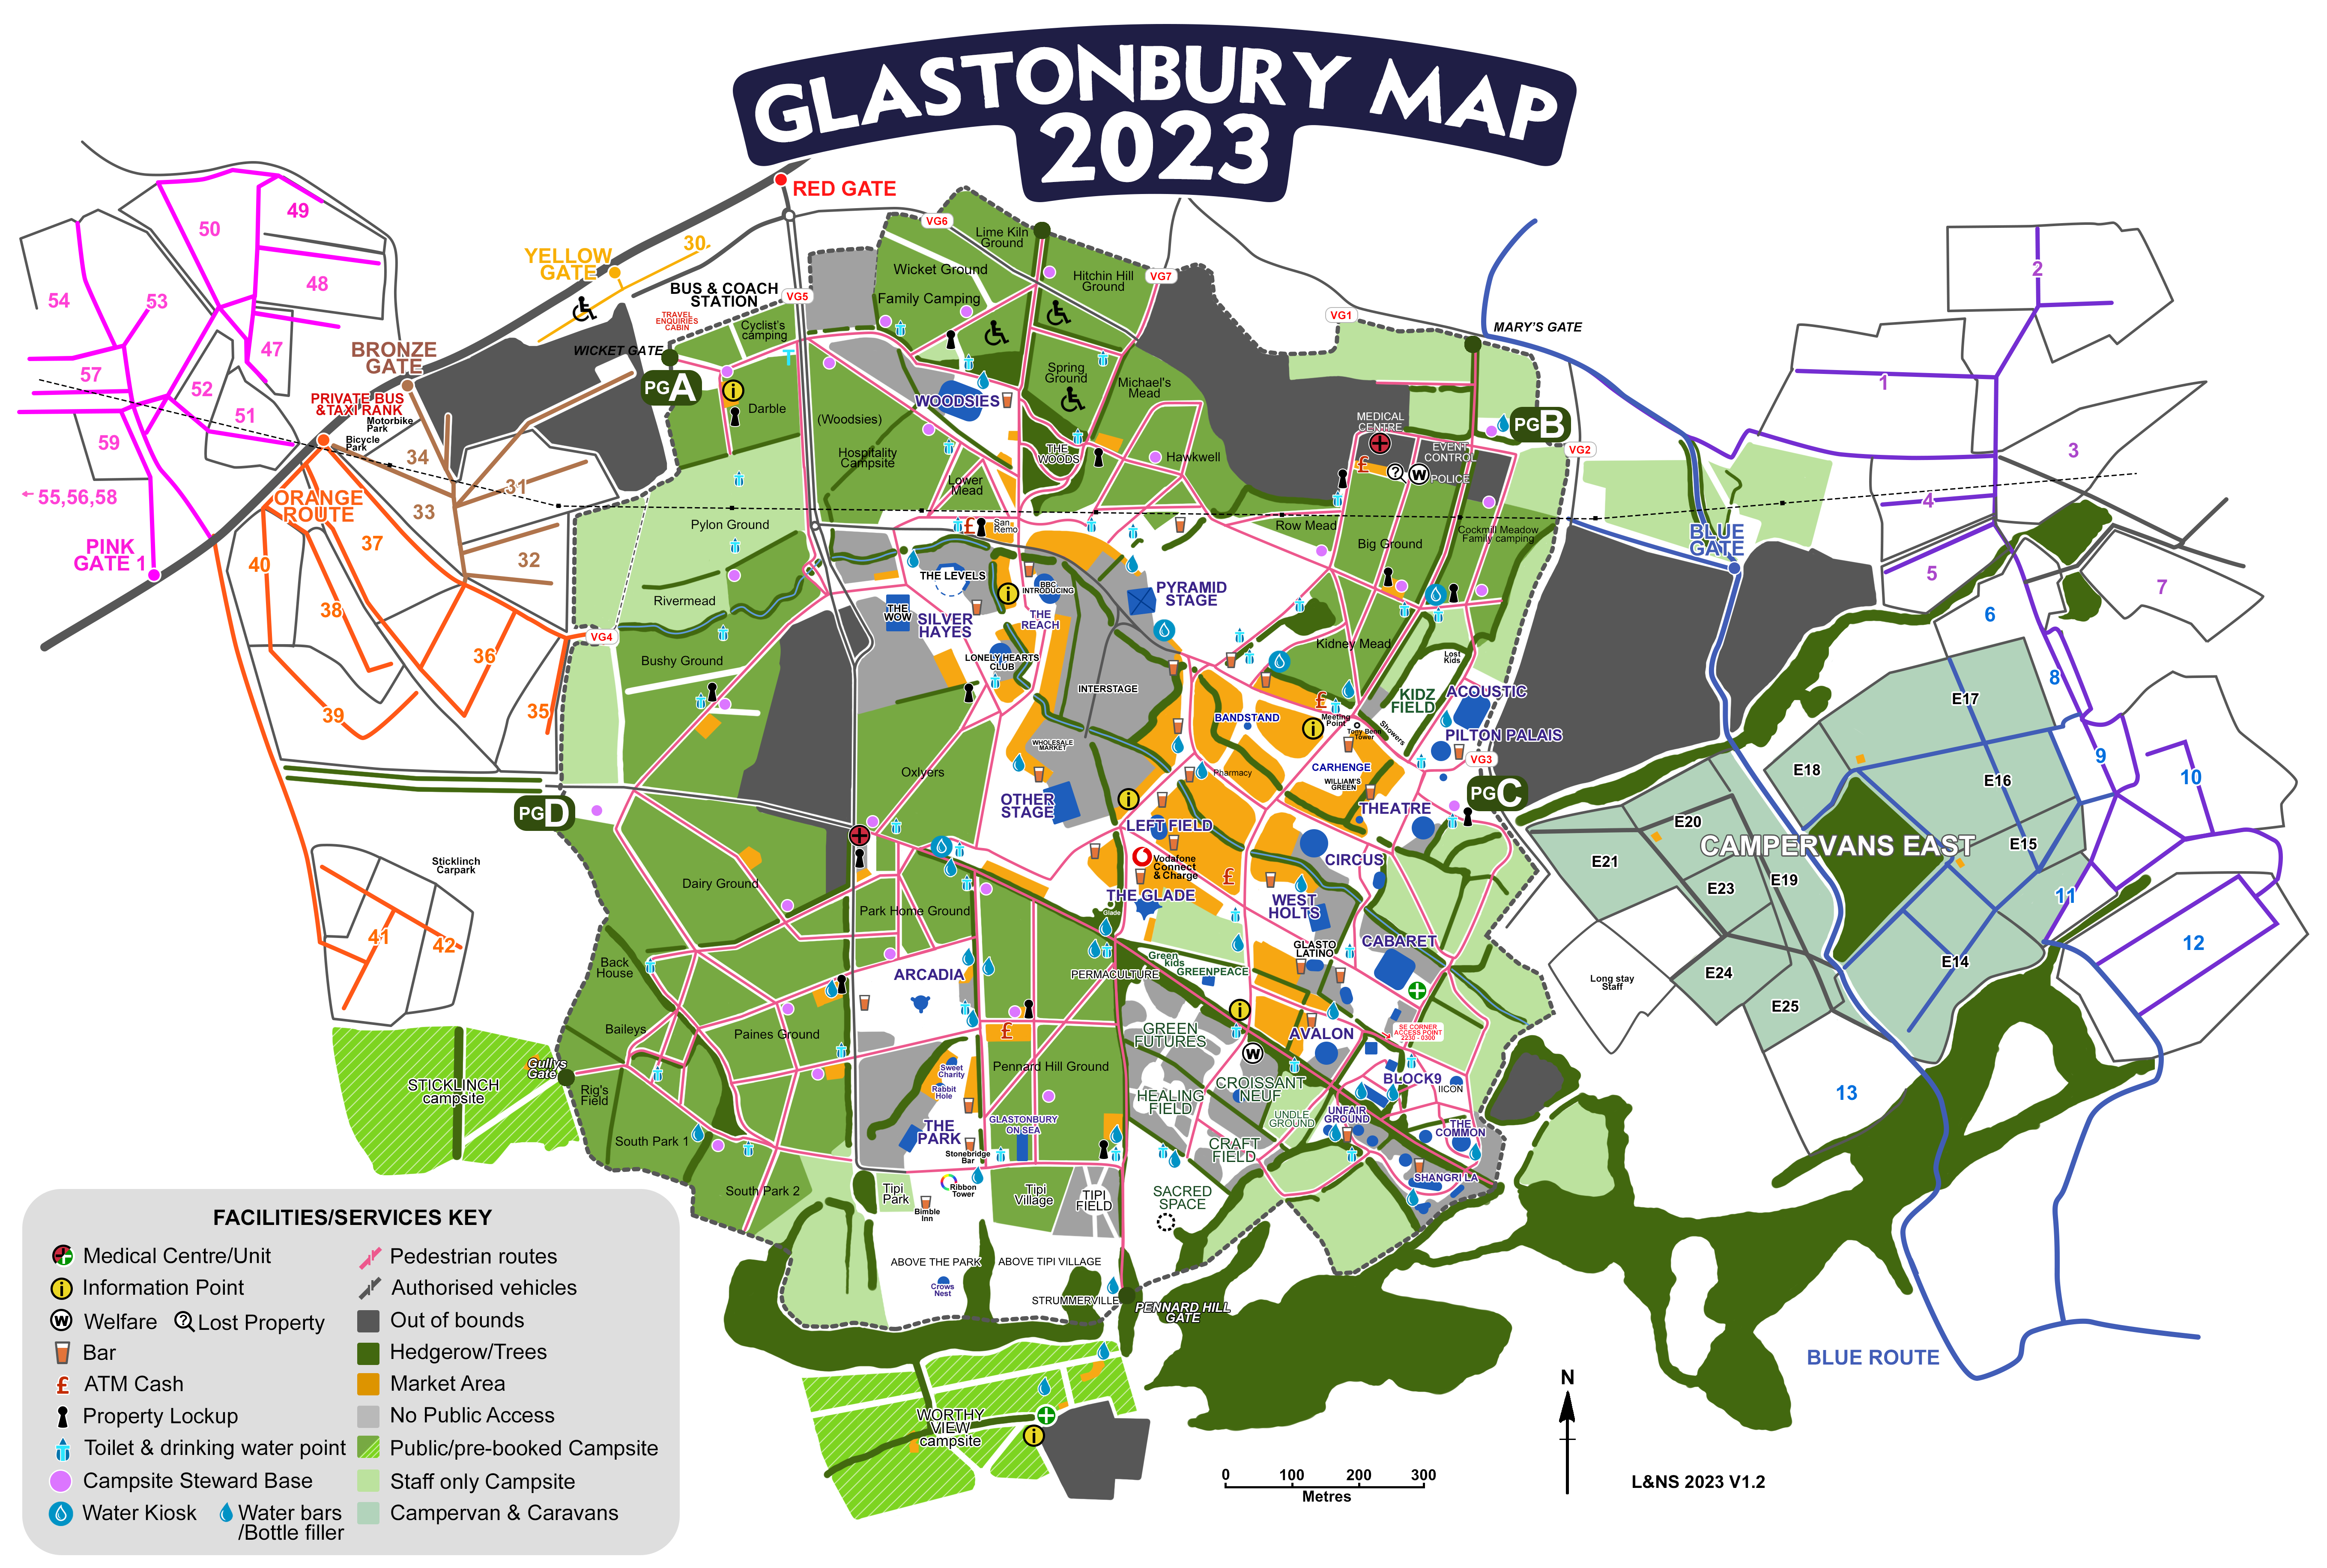 Glastonbury-Webmap-2023_V1.2.png